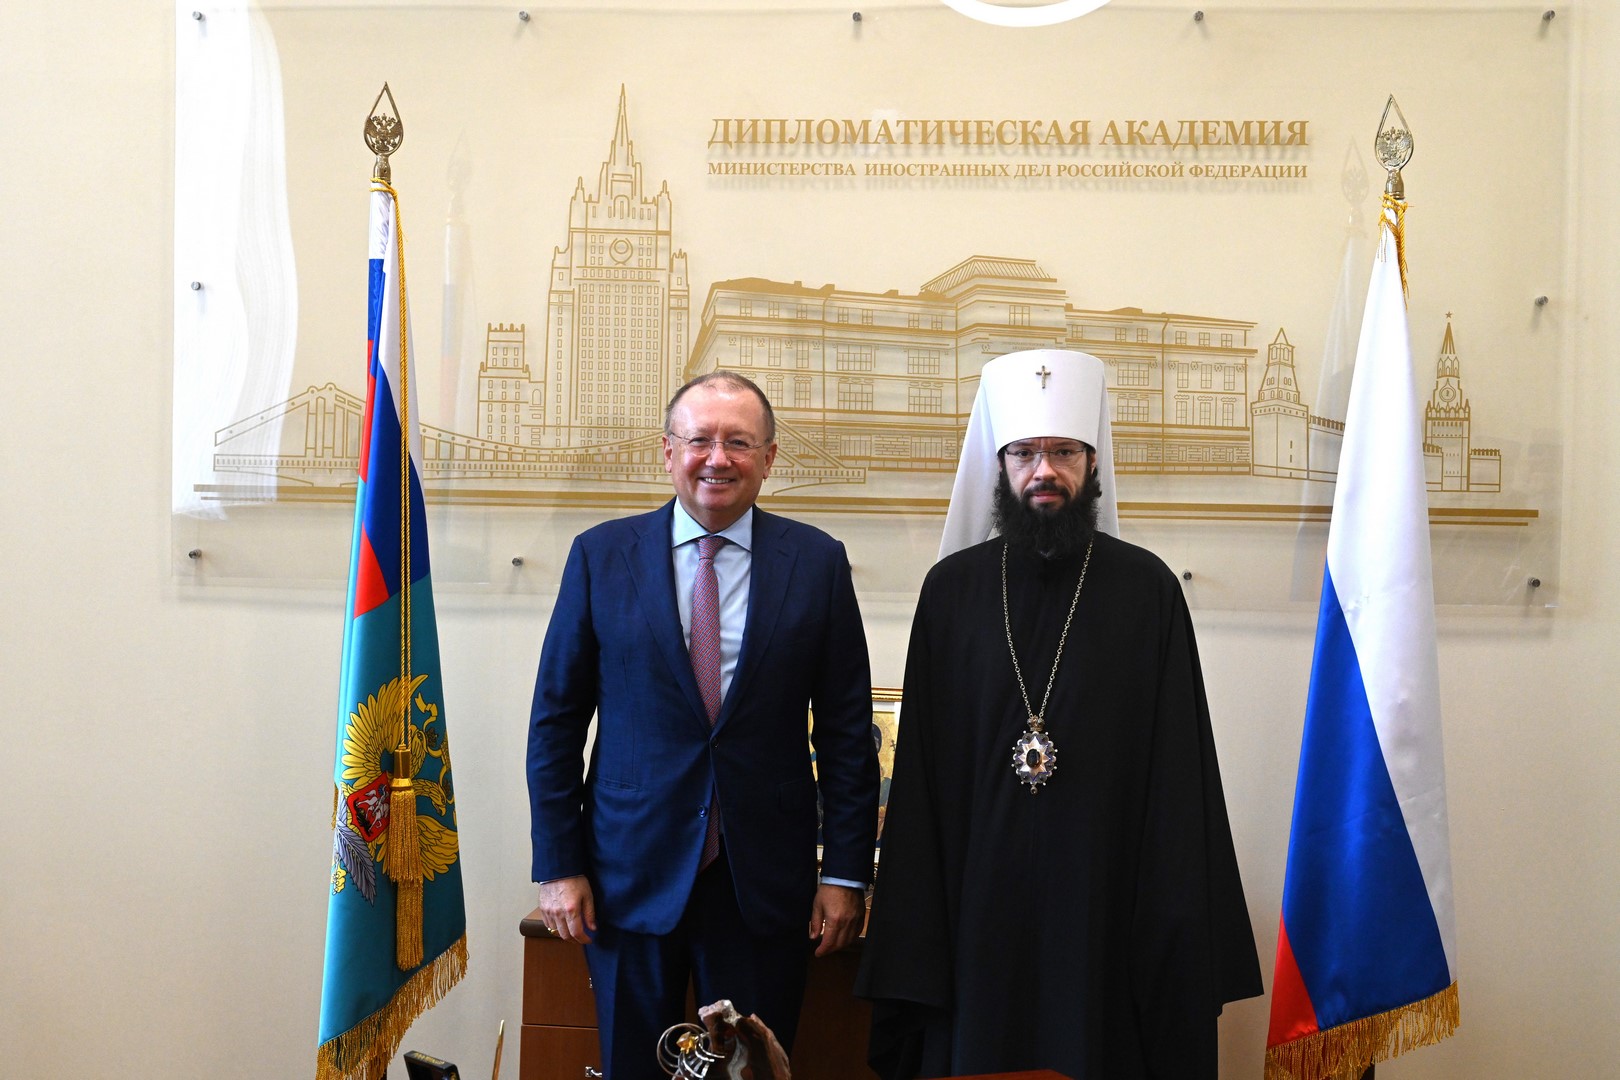 Le métropolite Antoine de Volokolamsk a reçu le titre de docteur honoris causa de l’Académie diplomatique du ministère des Affaires étrangères de Russie